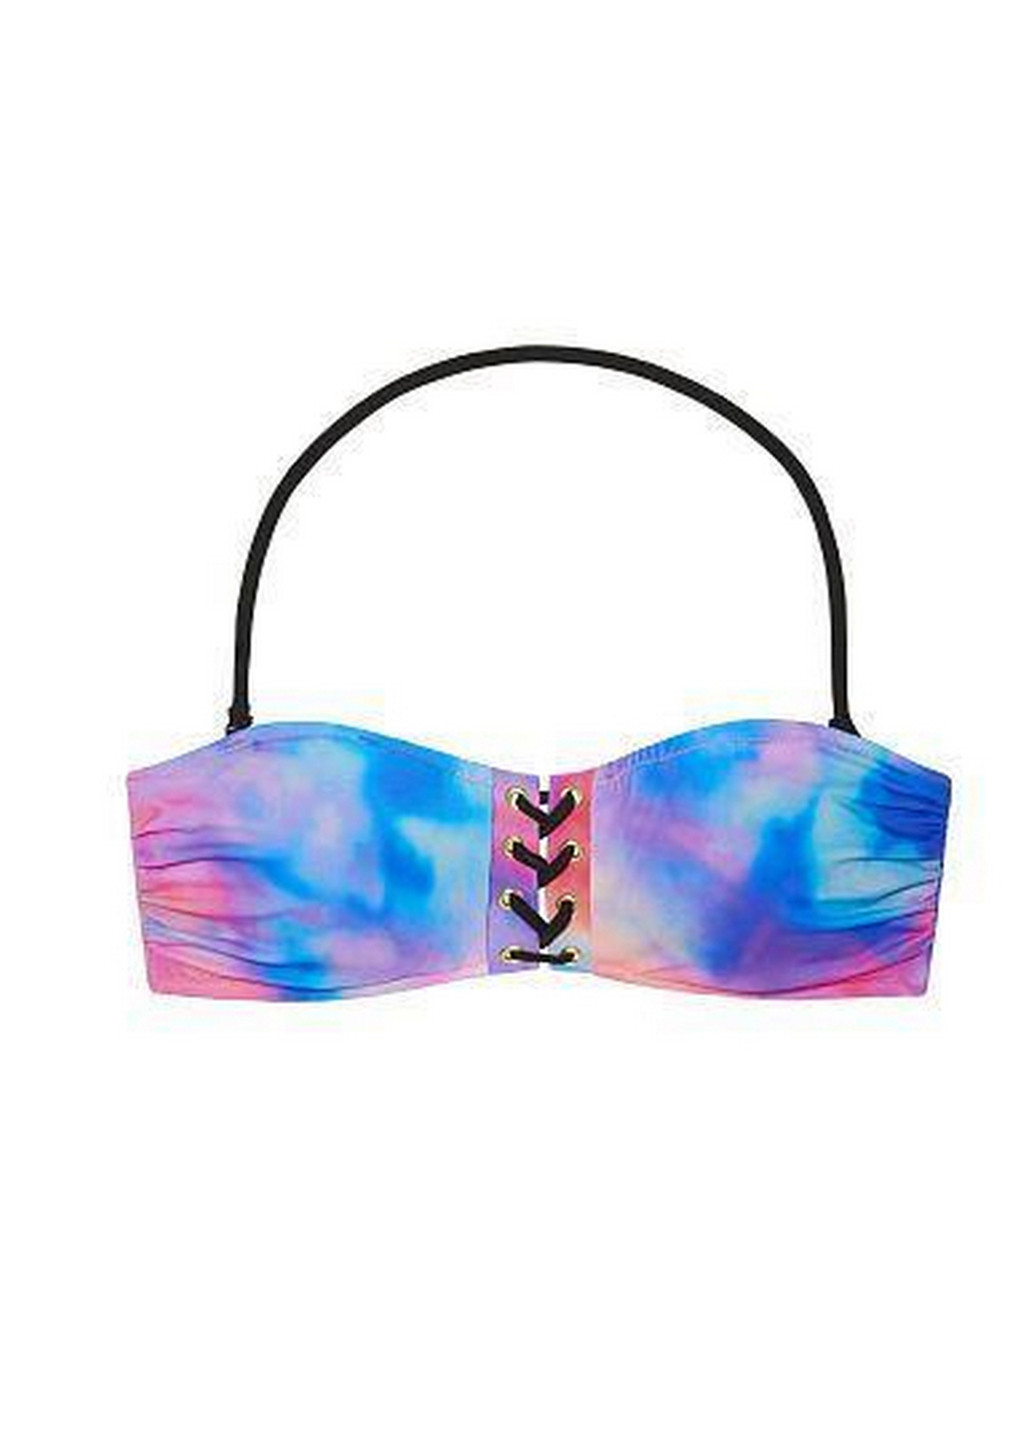 Комбинированный летний купальник (лиф, трусы) бандо, раздельный Victoria's Secret